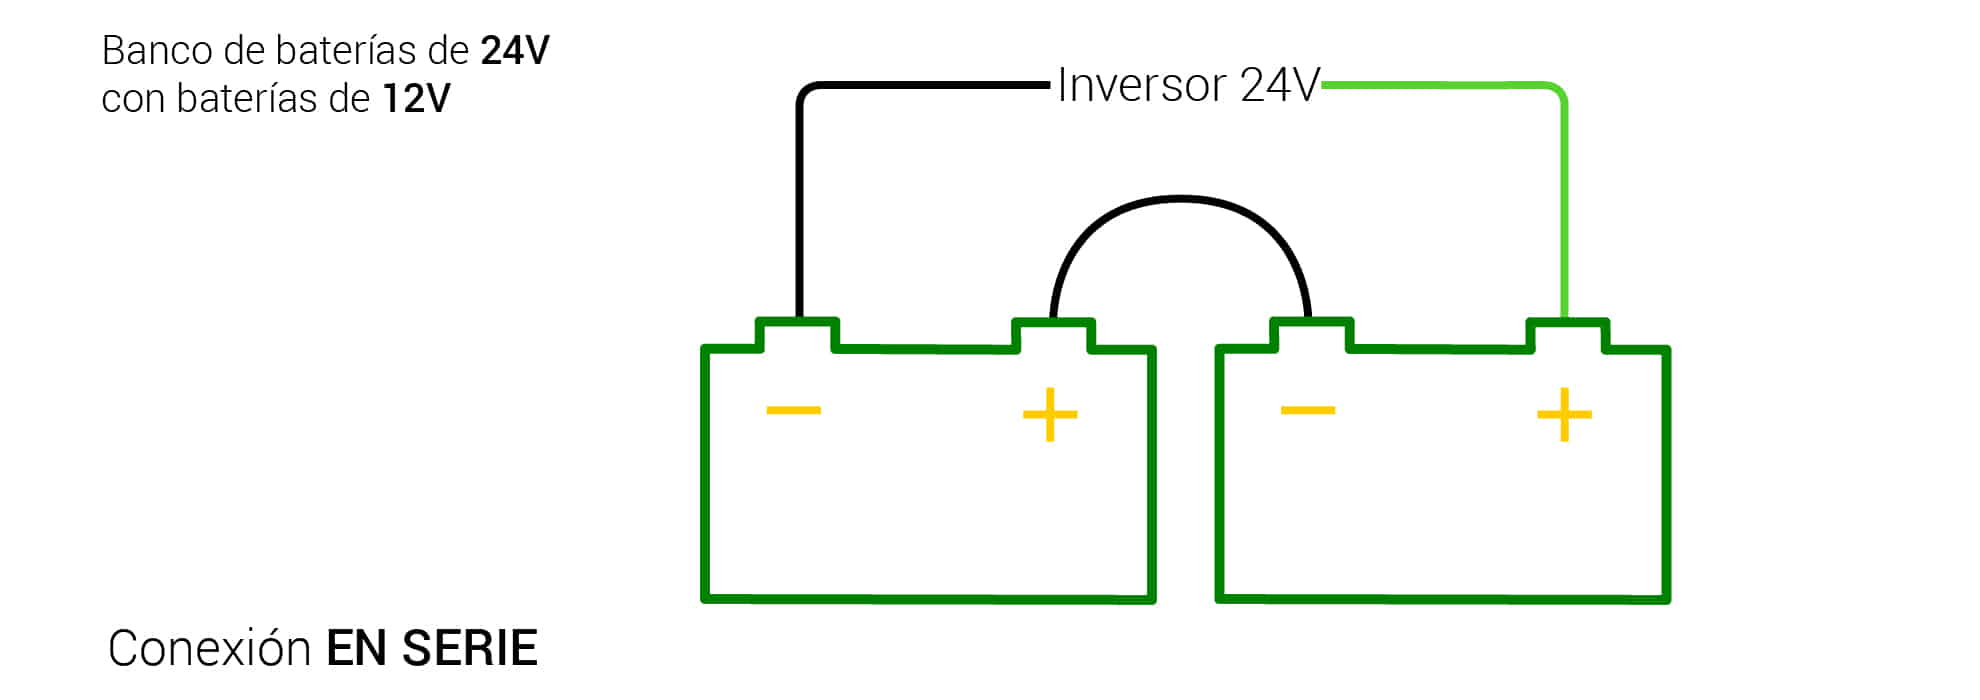 Conexión de baterías de 12V para conseguir un banco de baterías de 24V